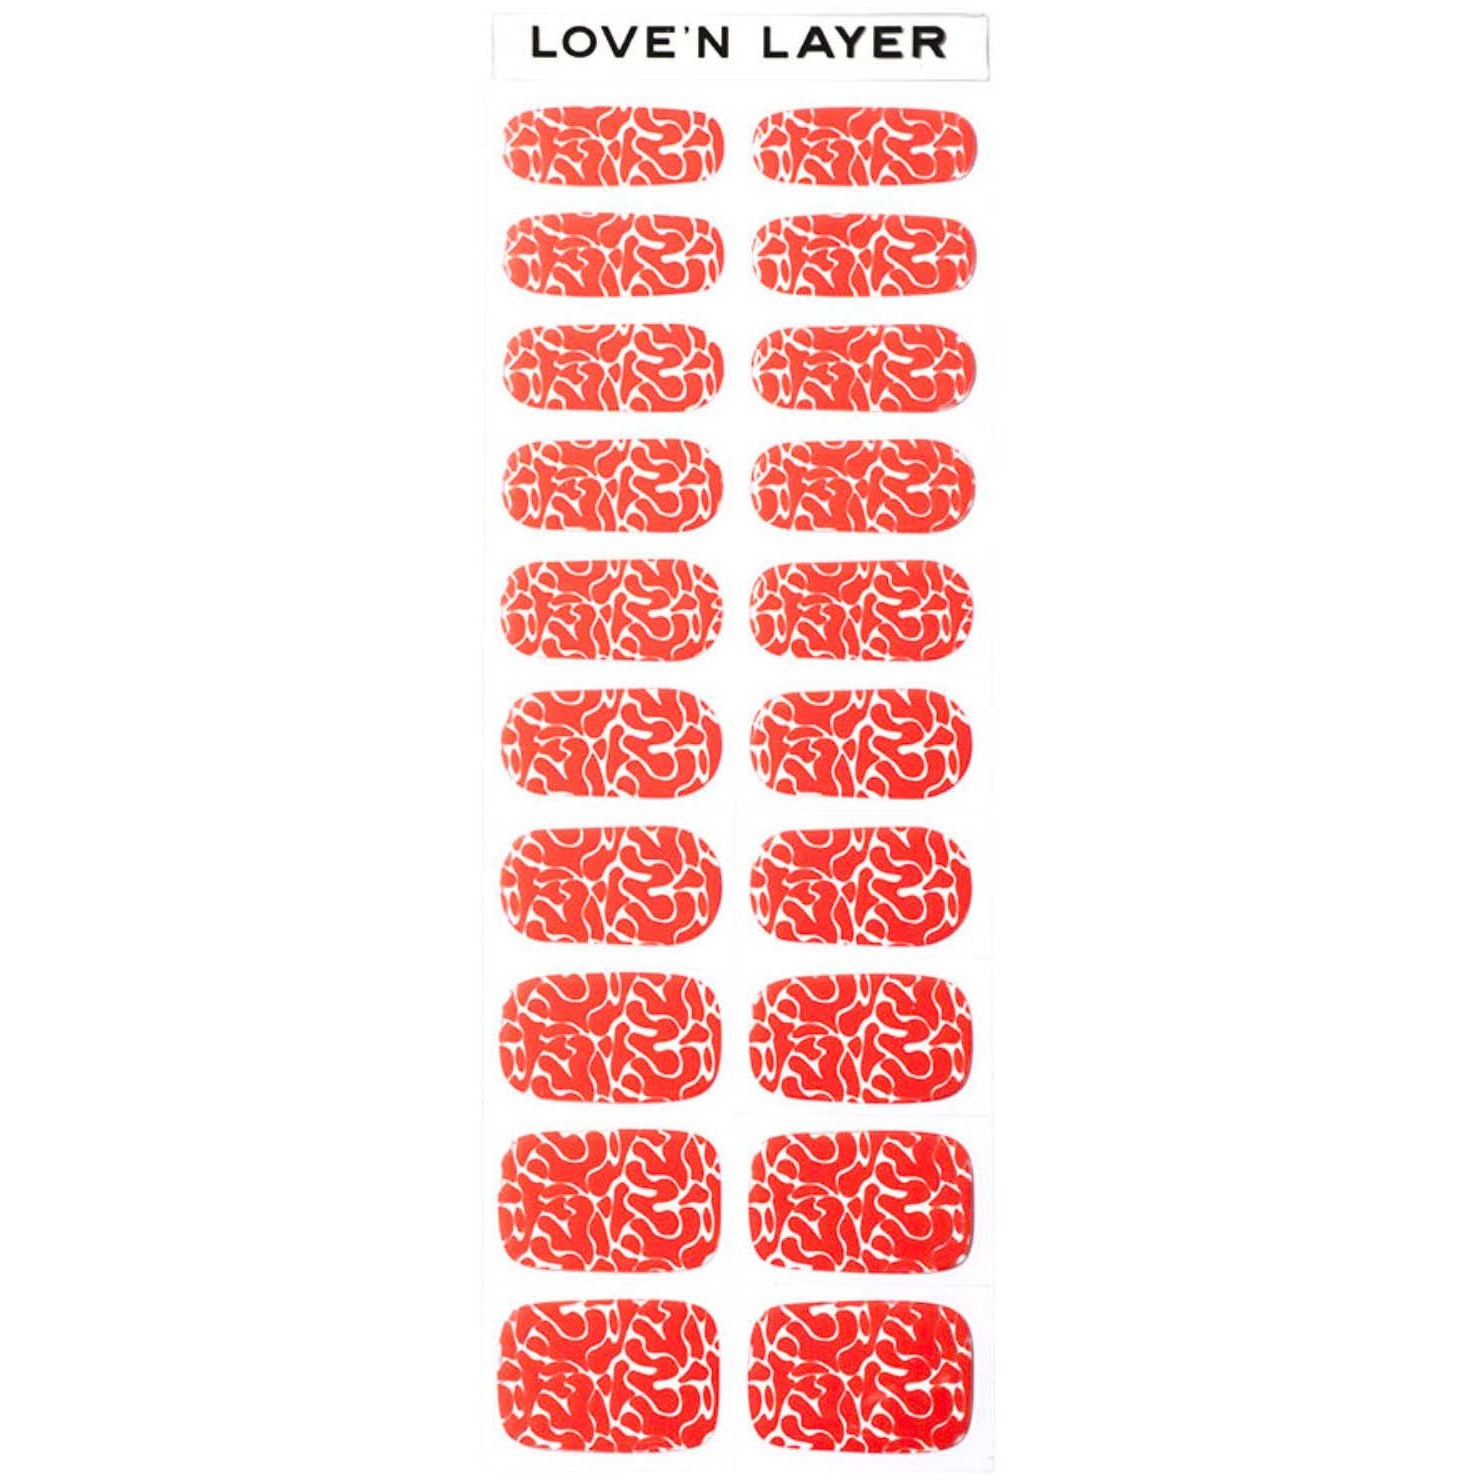 Läs mer om Loven Layer LNL Raspberry Red